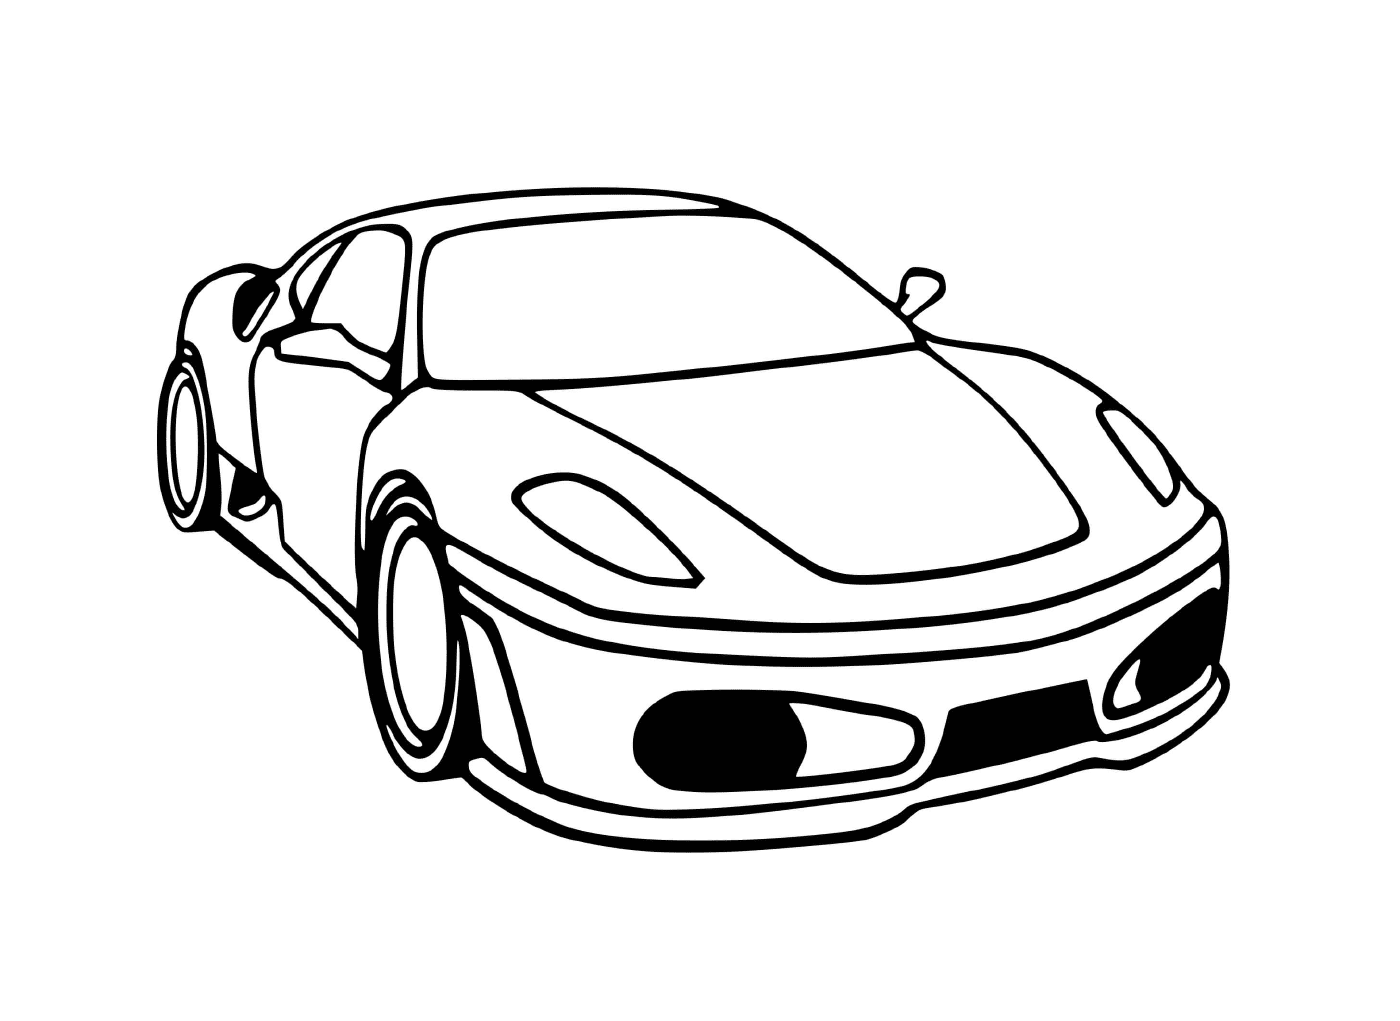  A Автомобиль Ferrari f430 